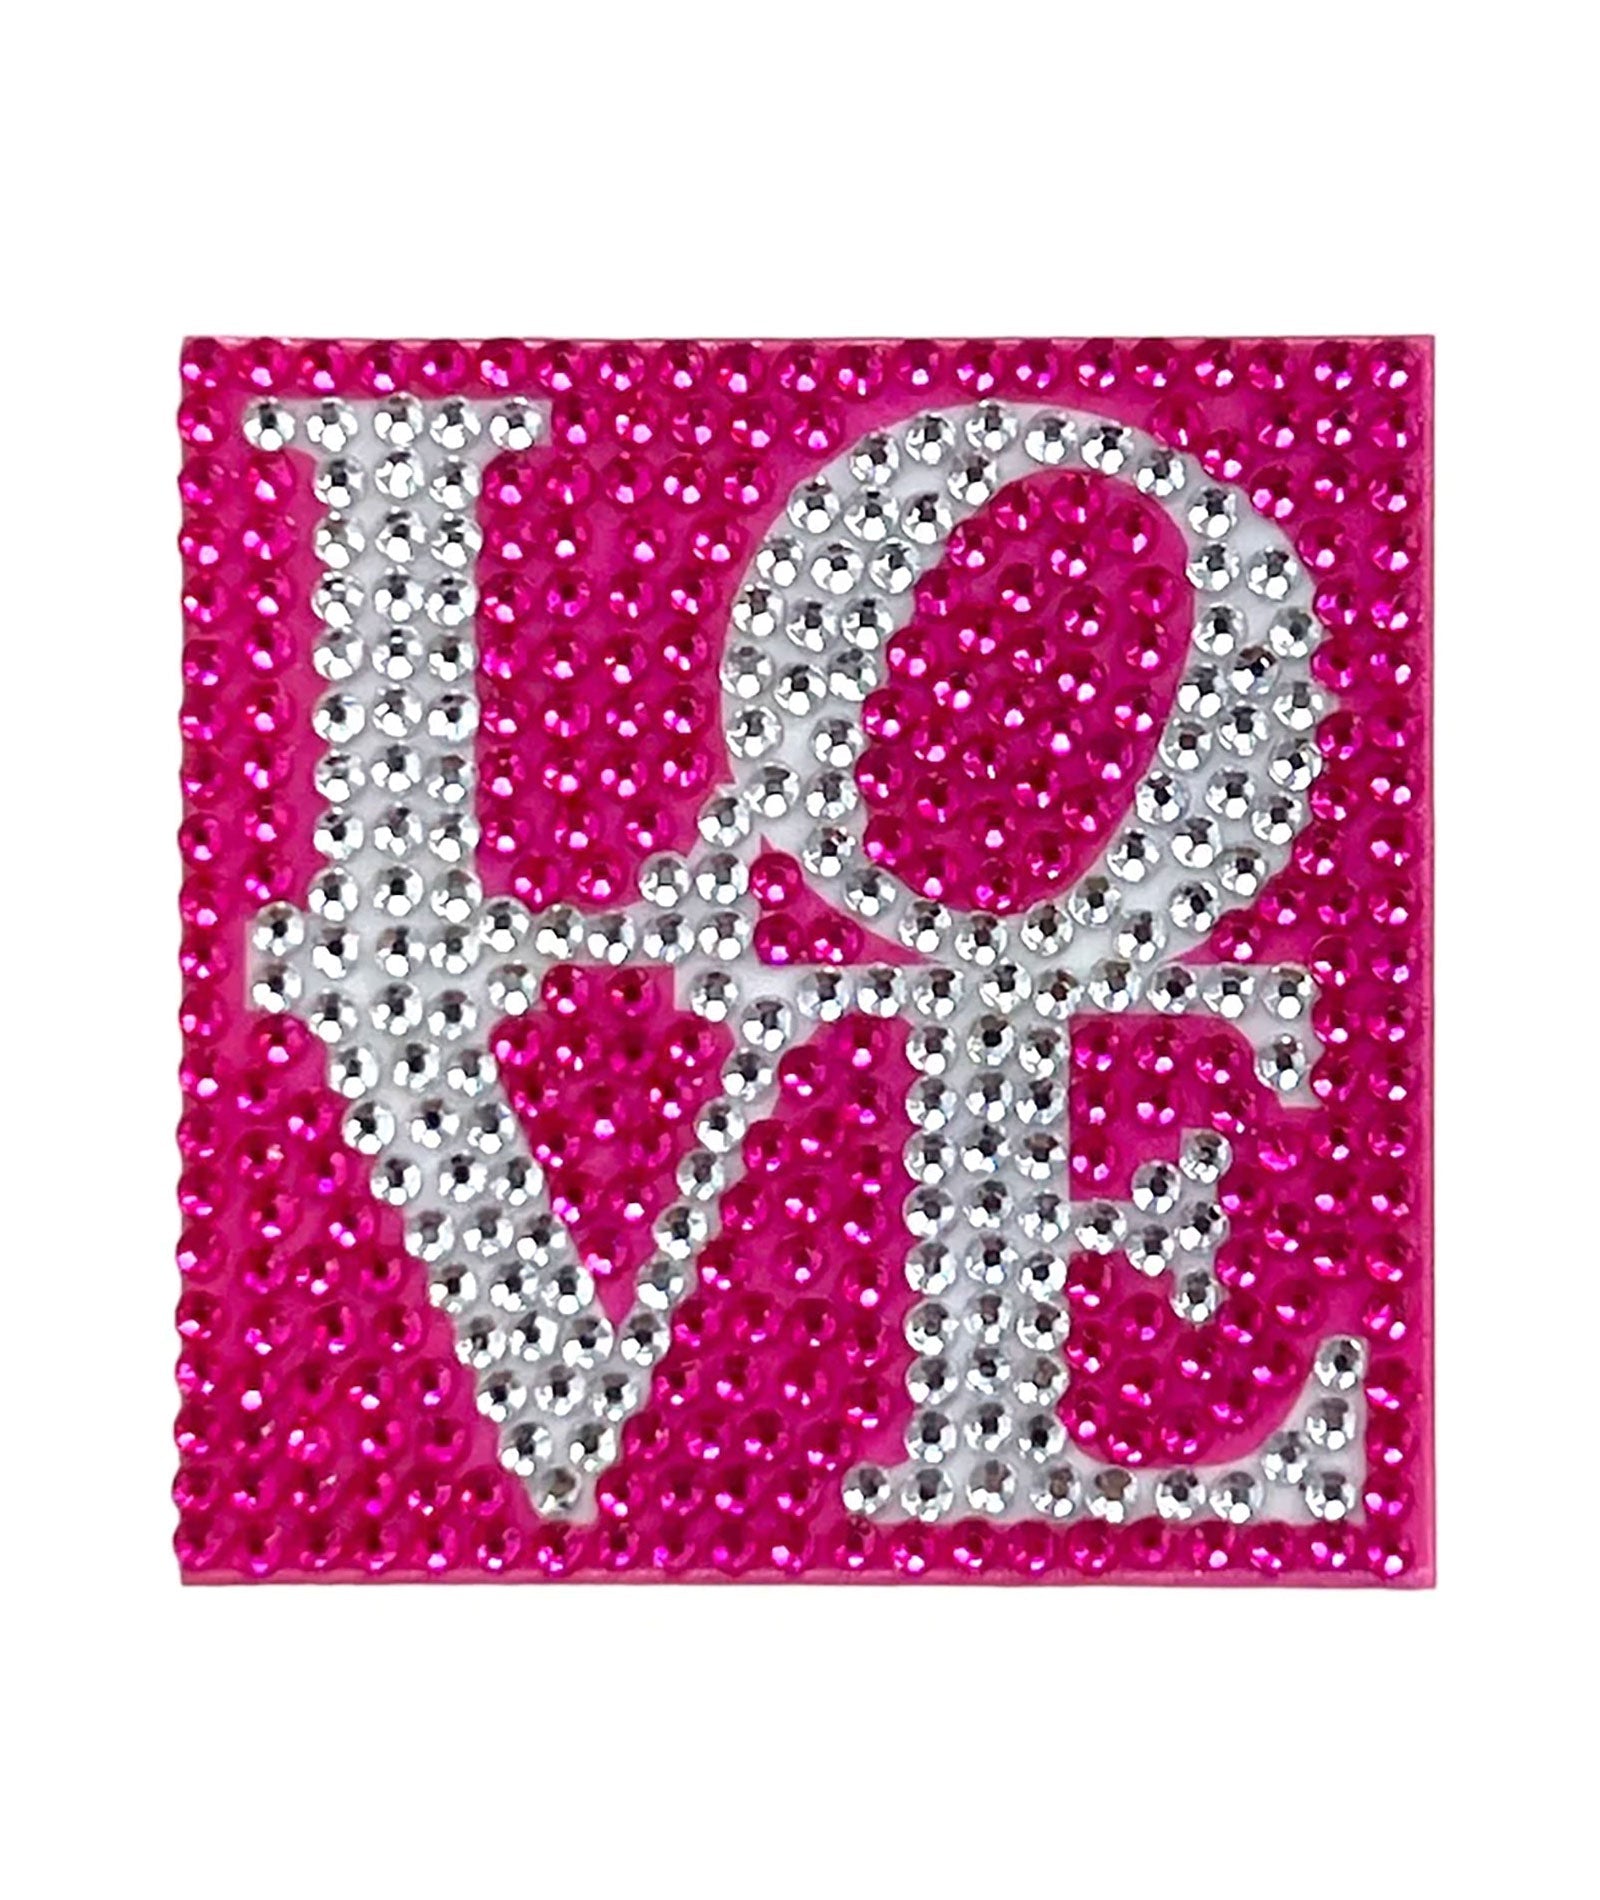 StickerBeans LOVE Sparkle Sticker – 2"